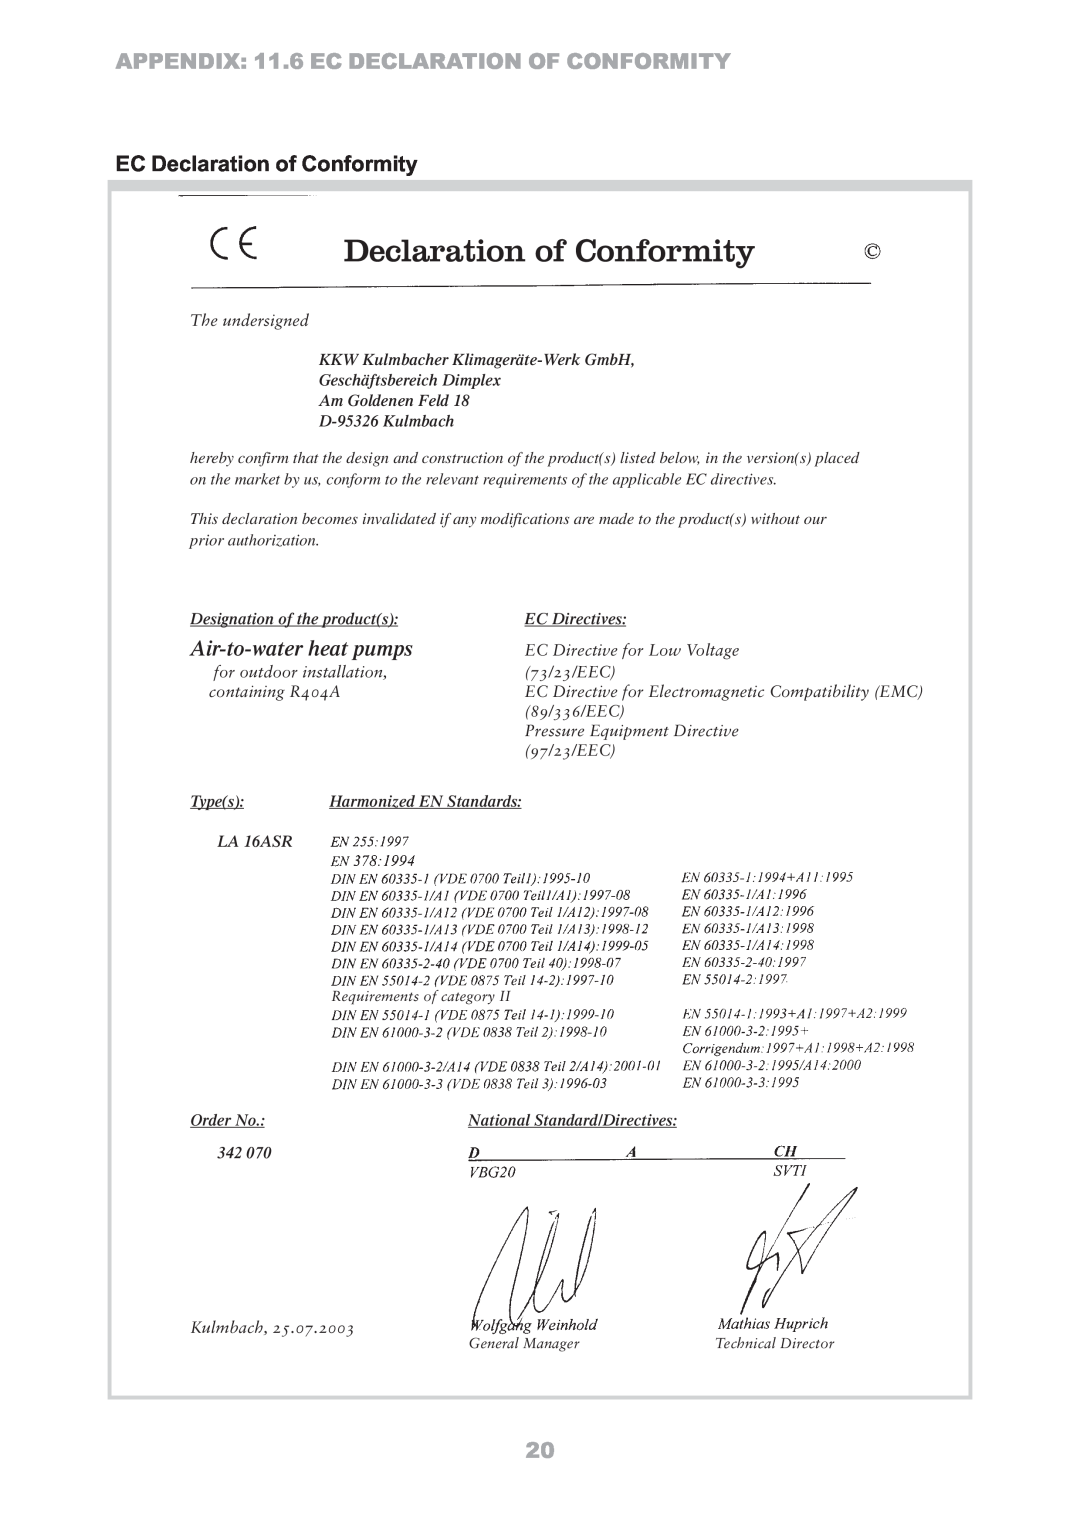 Dimplex LA16ASR manual EC Declaration of Conformity, APPENDIX 11.6 EC DECLARATION OF CONFORMITY, Air-to-waterheat pumps 